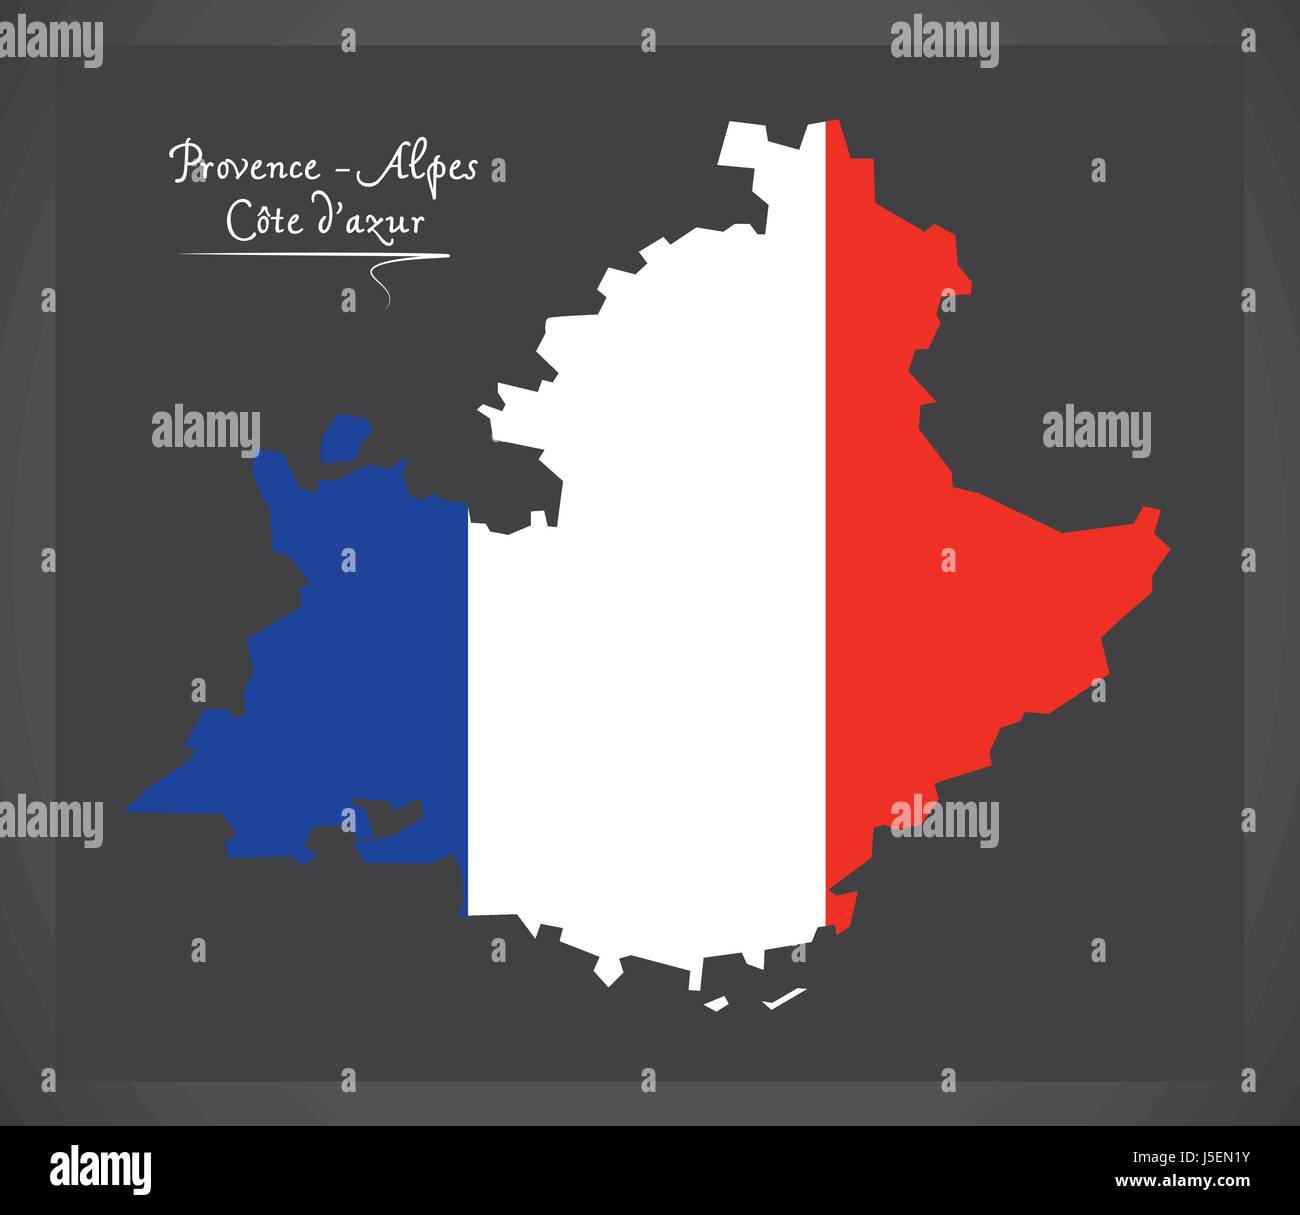 Provence - Alpes - Côte d'azur carte avec illustration du drapeau national français Illustration de Vecteur